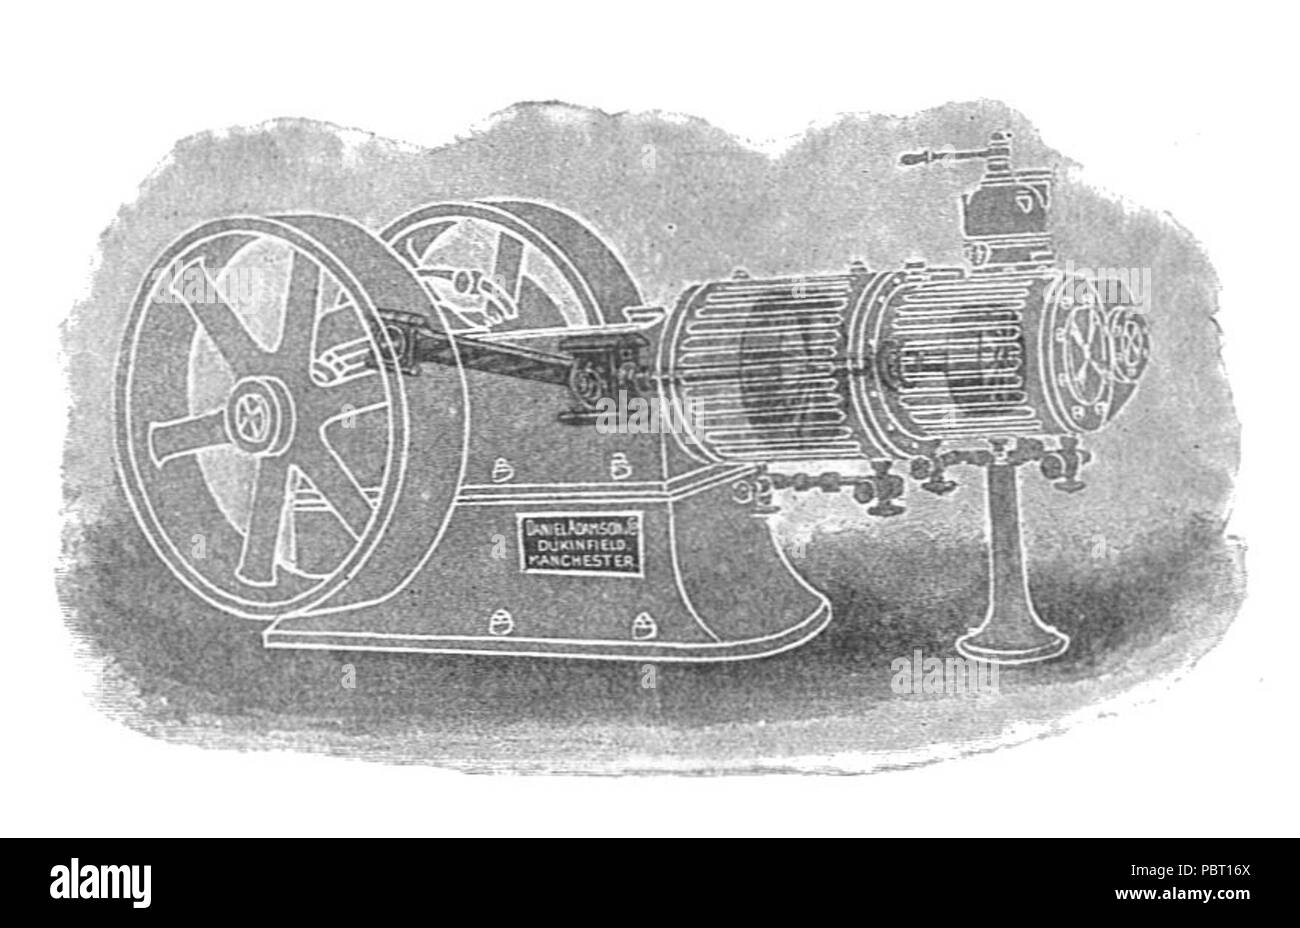 Adamson ideale Motor, compound Version (Rankin Kennedy, elektrische Installationen, Vol. III, 1903). Stockfoto